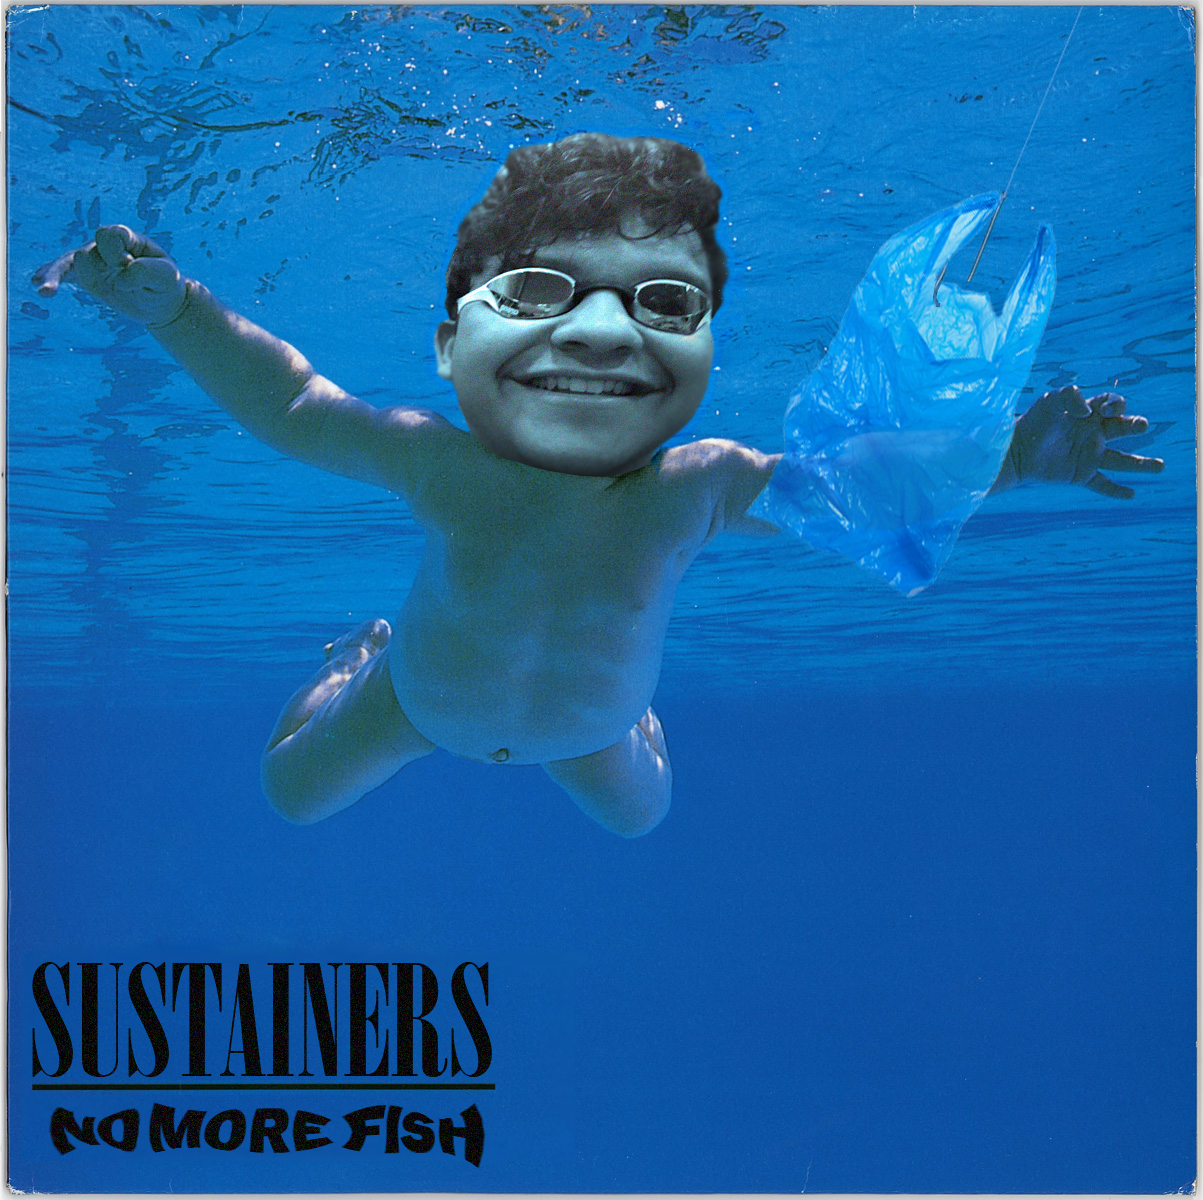 no more fish